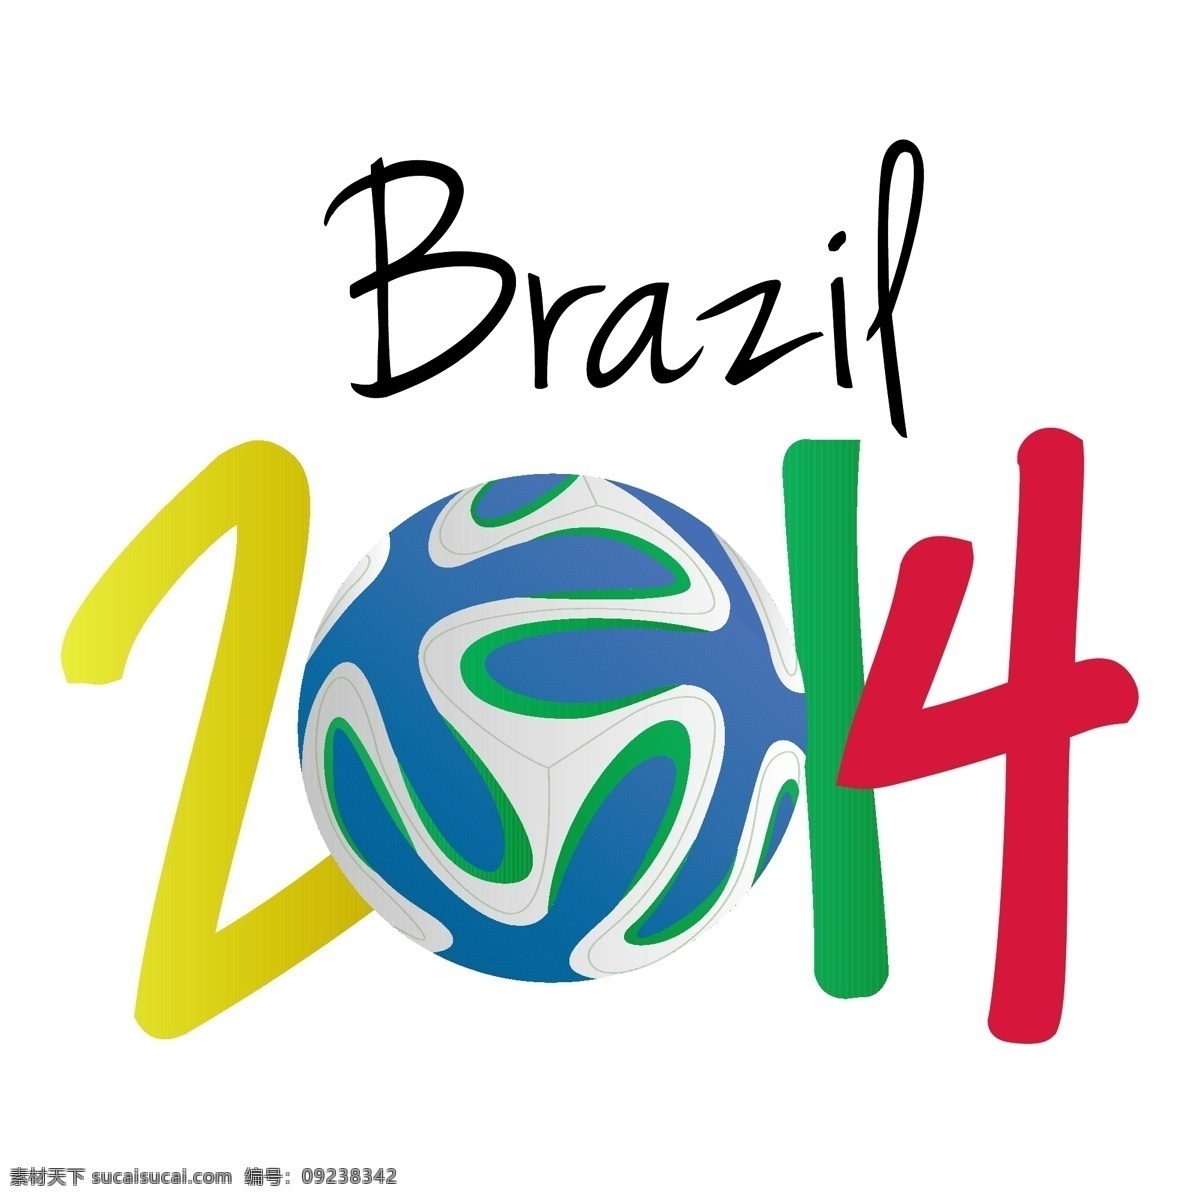 2014 巴西 世界杯 海报 模板下载 足球 足球赛事 足球比赛 体育运动 生活百科 矢量素材 白色